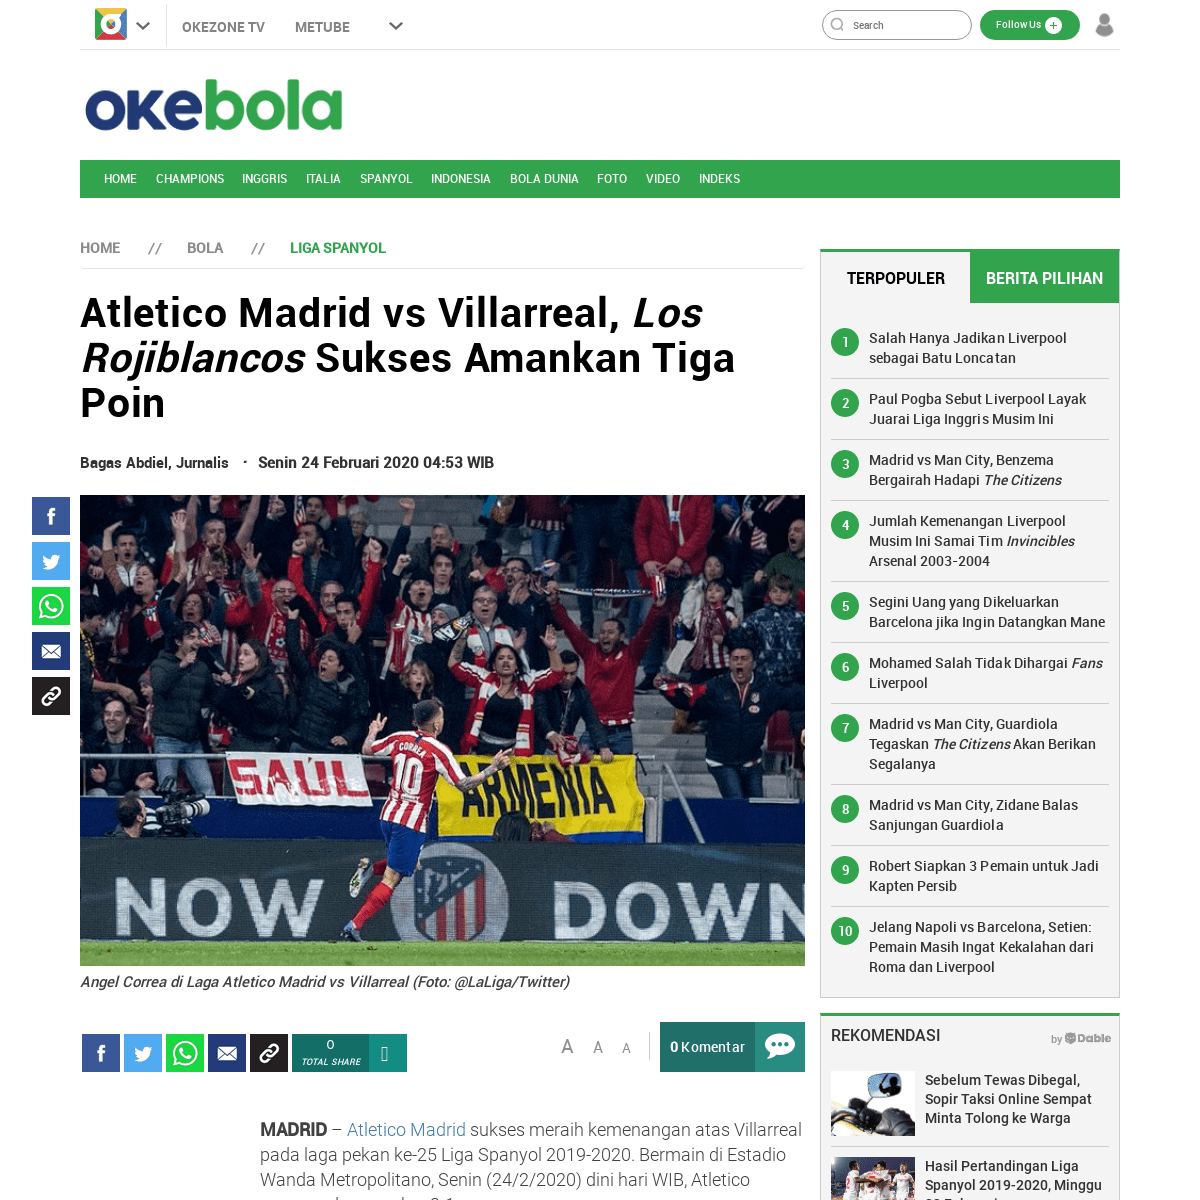 A complete backup of bola.okezone.com/read/2020/02/24/46/2173010/atletico-madrid-vs-villarreal-los-rojiblancos-sukses-amankan-ti